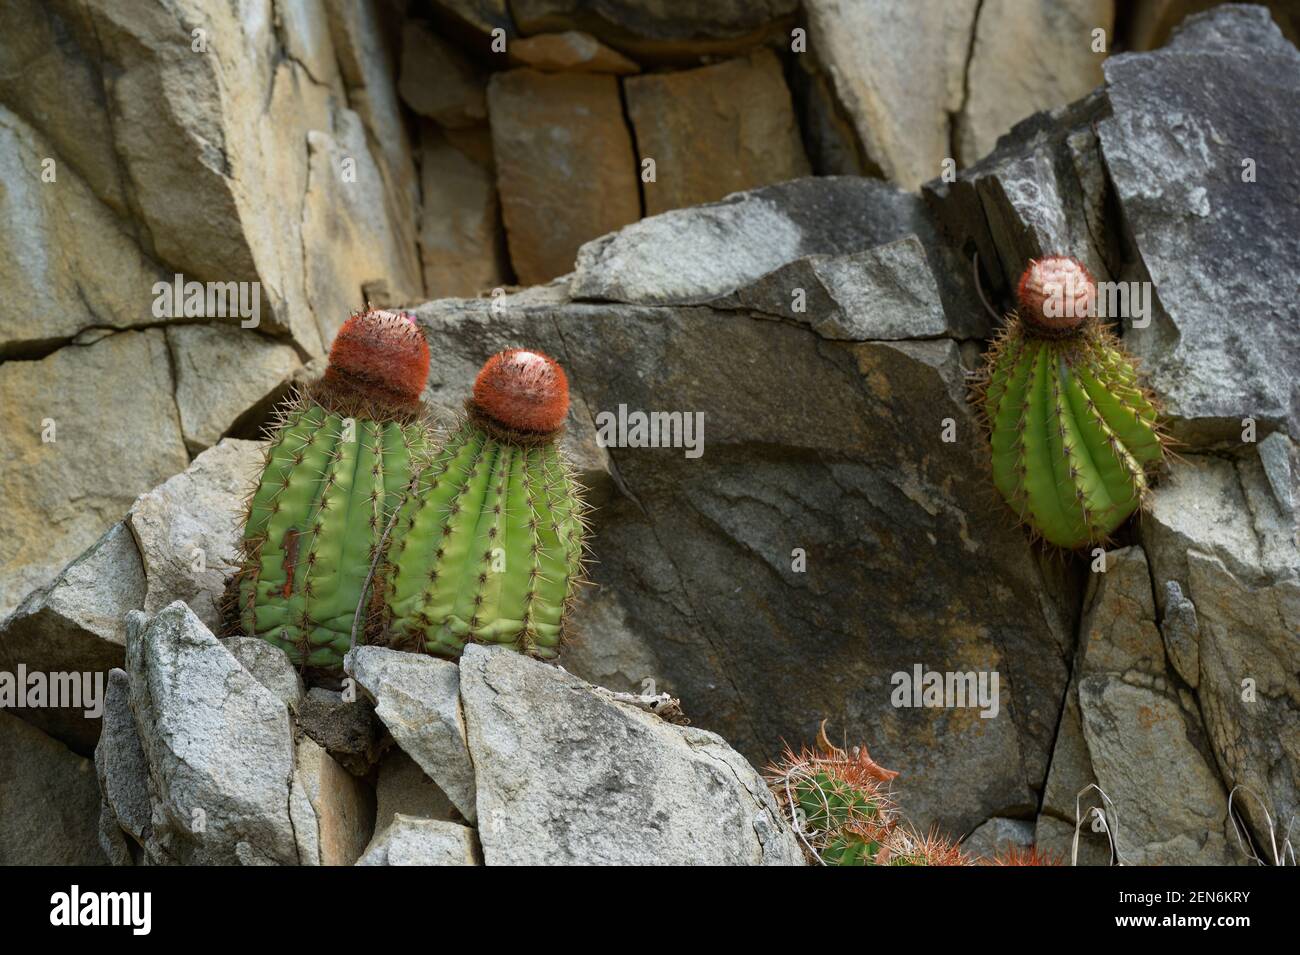 Melocactus (melon cactus) or Turk's Cap cactus, Cooper Island, British Virgin Islands Stock Photo